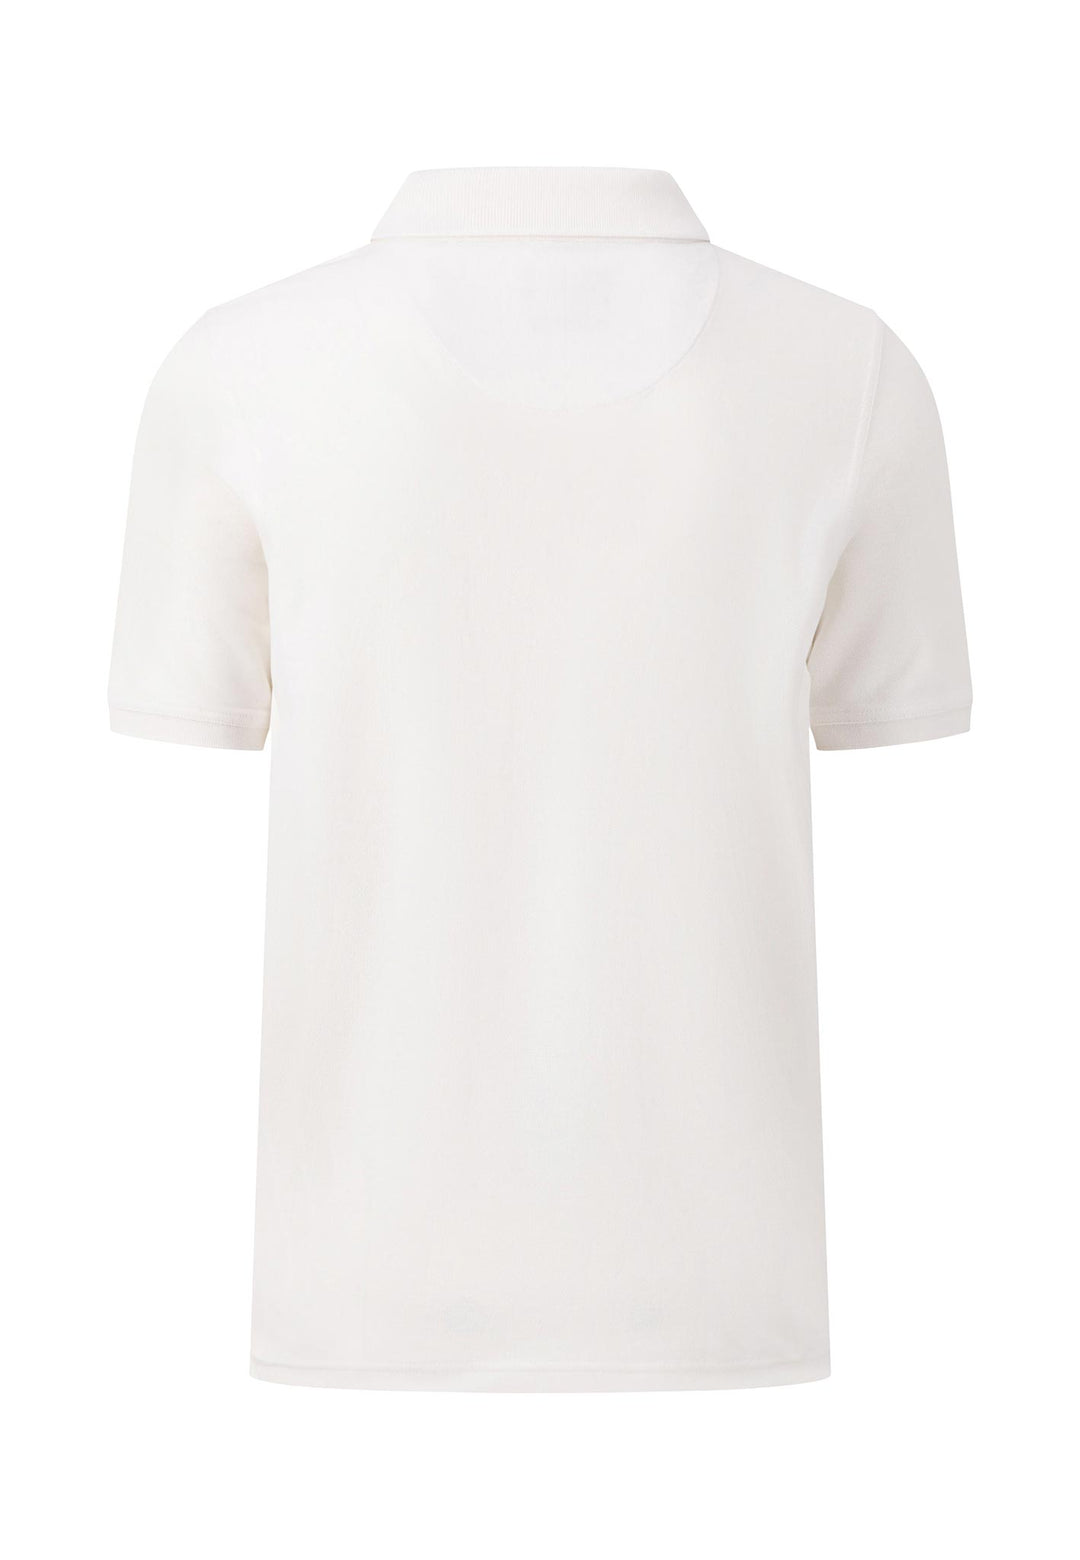 PLUS SIZE | Poloshirt aus Premium-Cotton